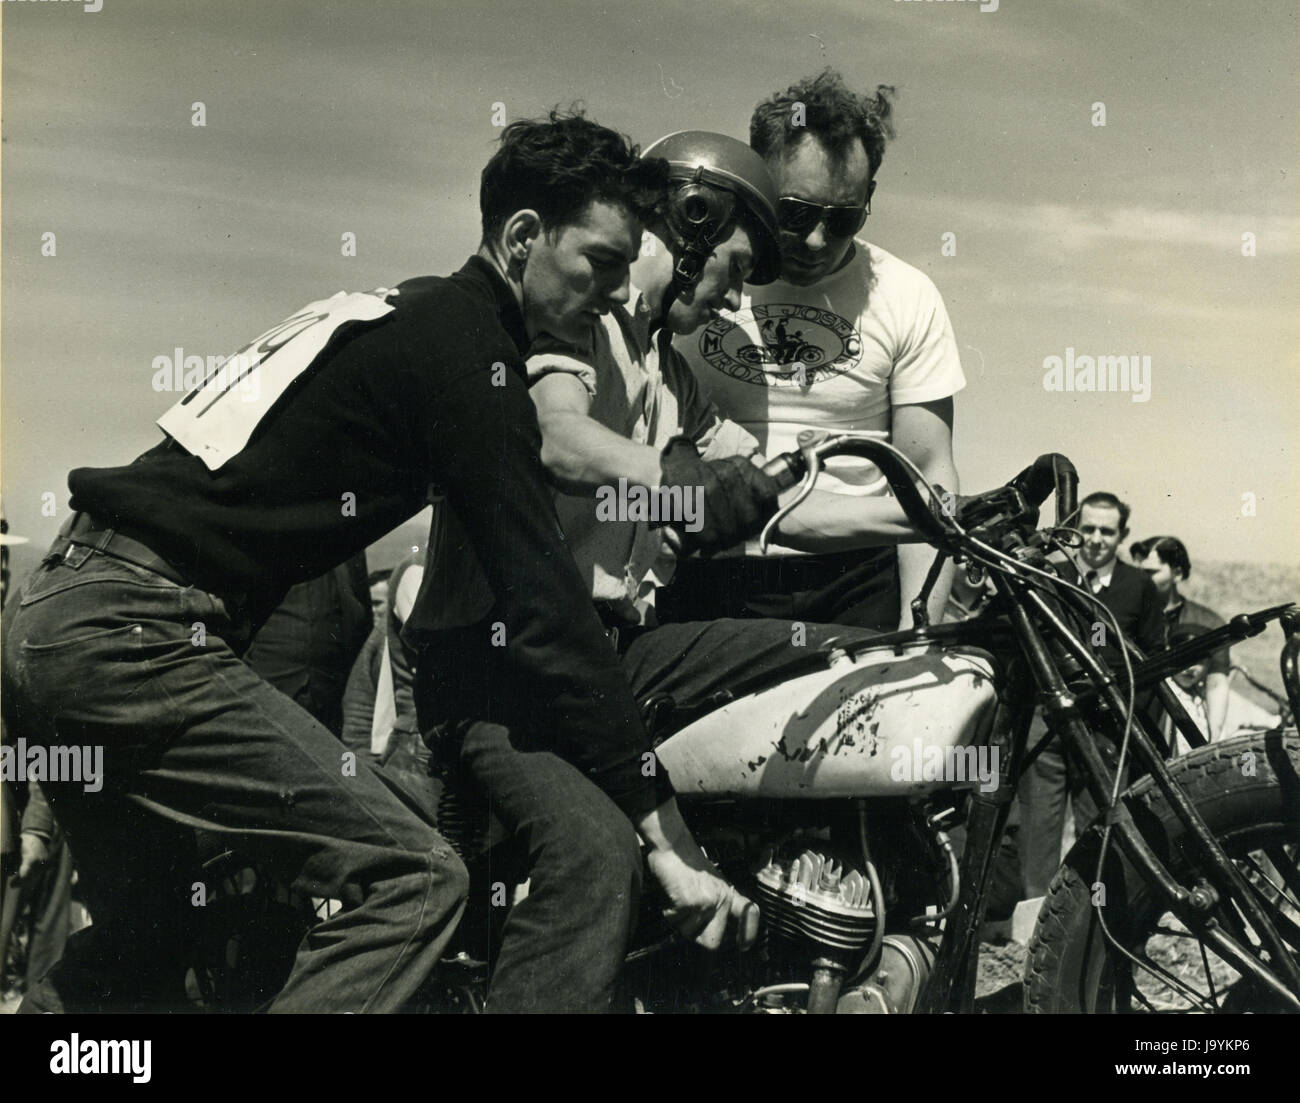 Le Comté de Santa Clara, Californie, le 5 avril 1940-membres d'un club de moto à se préparer à participer à une course de côte. Banque D'Images